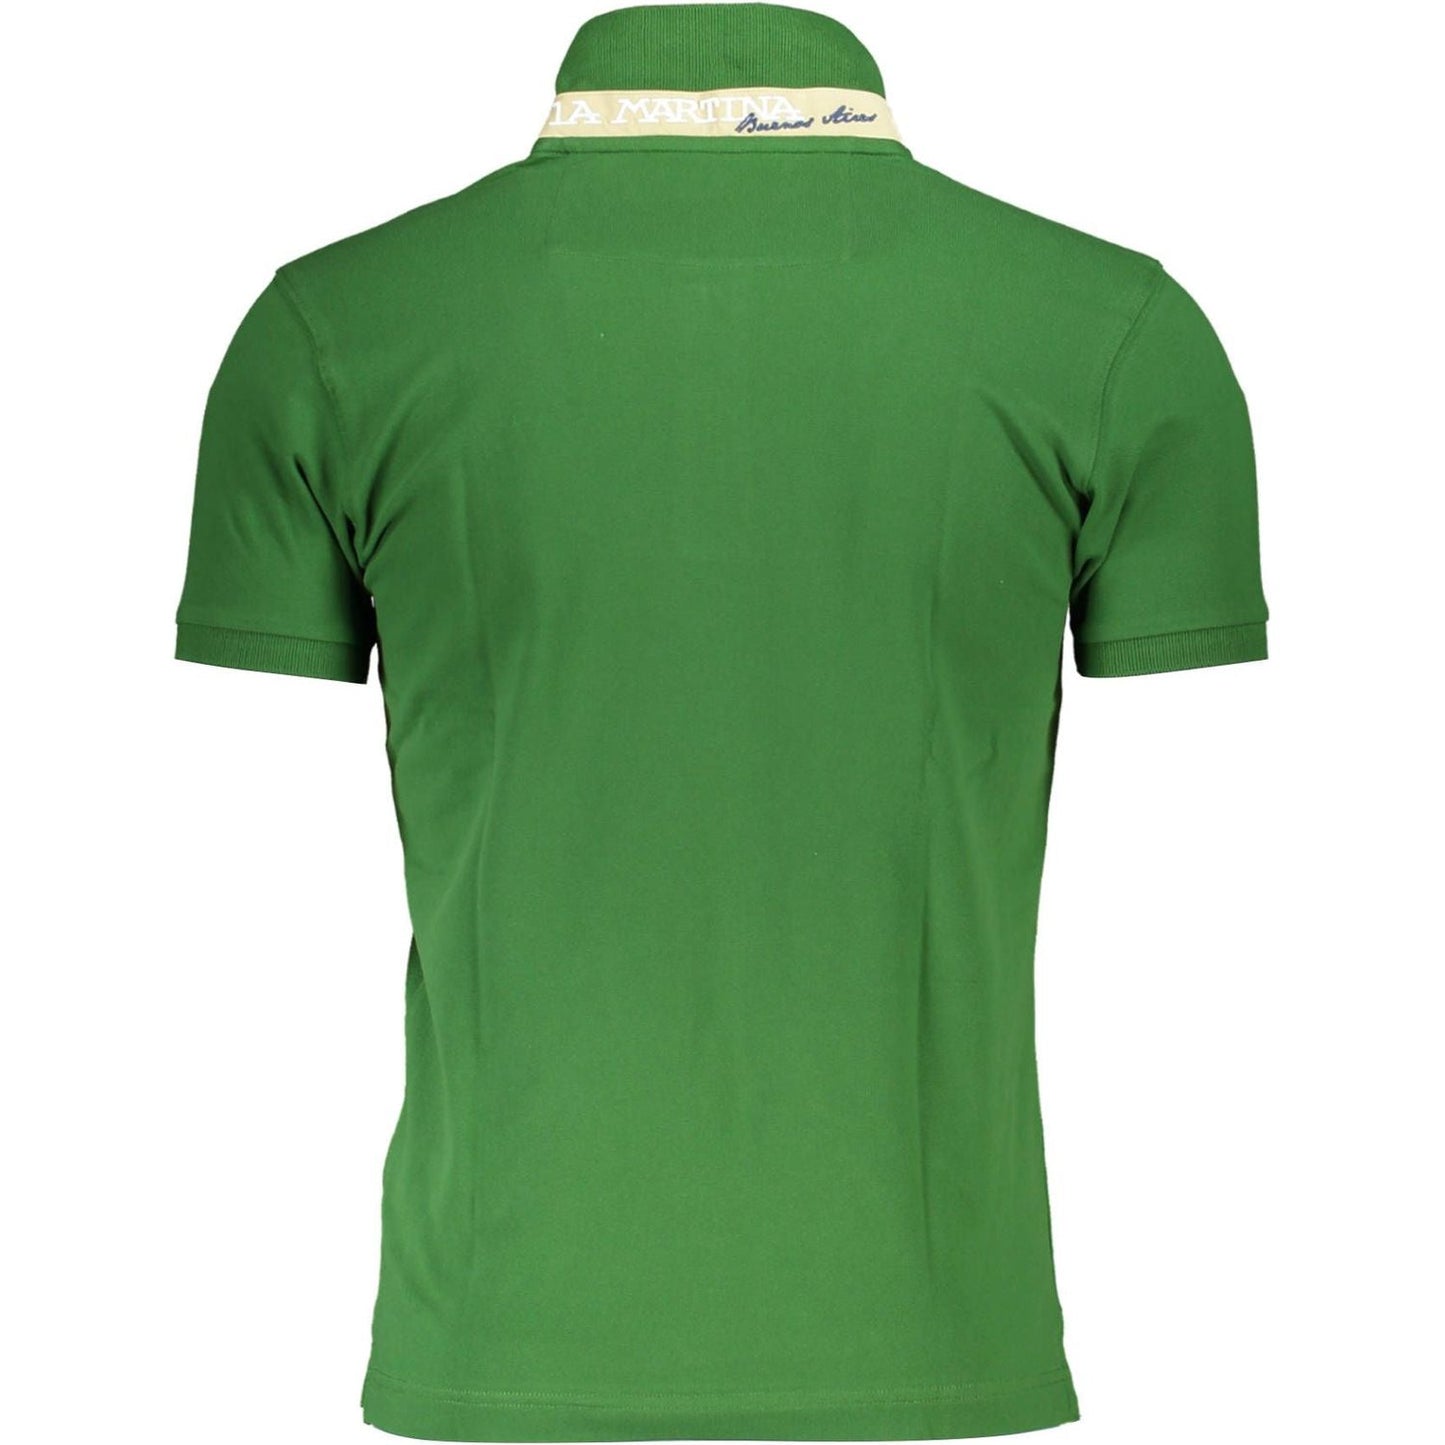 La MartinaElegant Slim Fit Green Polo With Contrasting DetailsMcRichard Designer Brands£119.00